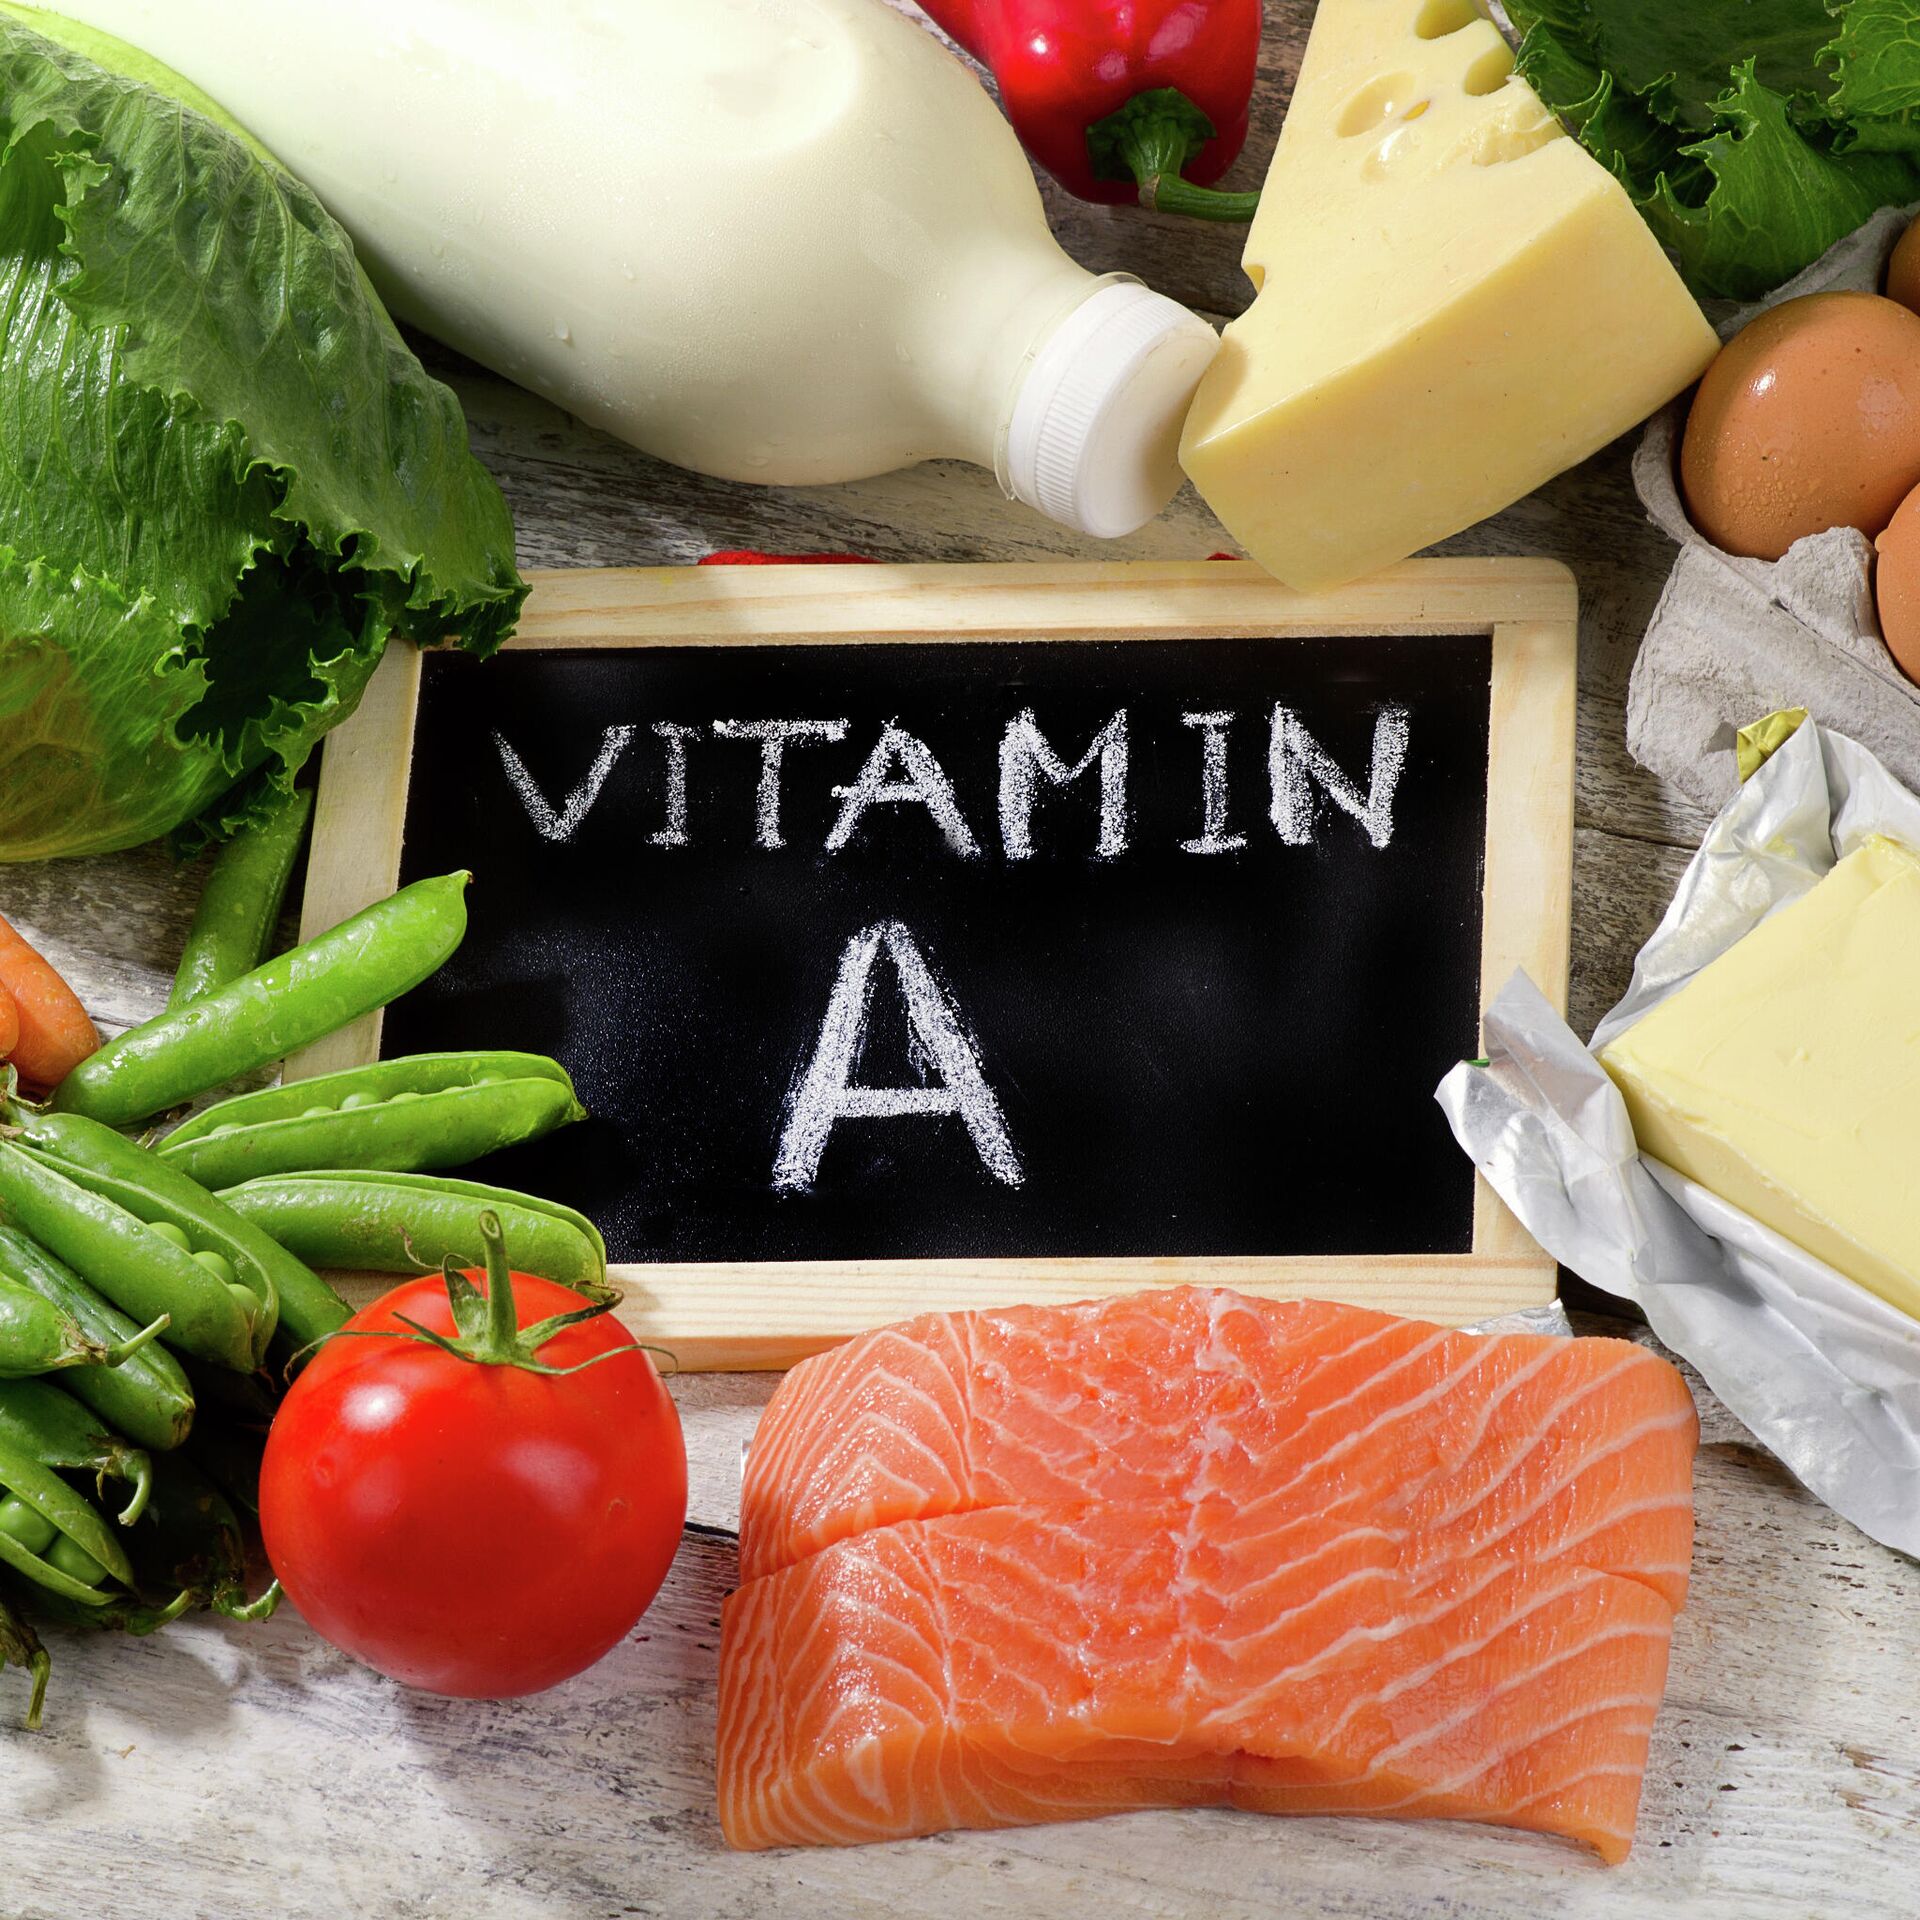 Конечно, недостаток витамина А может вызвать различные проблемы для организма. Это может быть плохое зрение, сухость и шелушение кожи, проблемы со здоровьем зубов и десен, ухудшение иммунной системы и другие проблемы. Поэтому, большое внимание должно быть уделено содержанию витамина А в рационе питания.